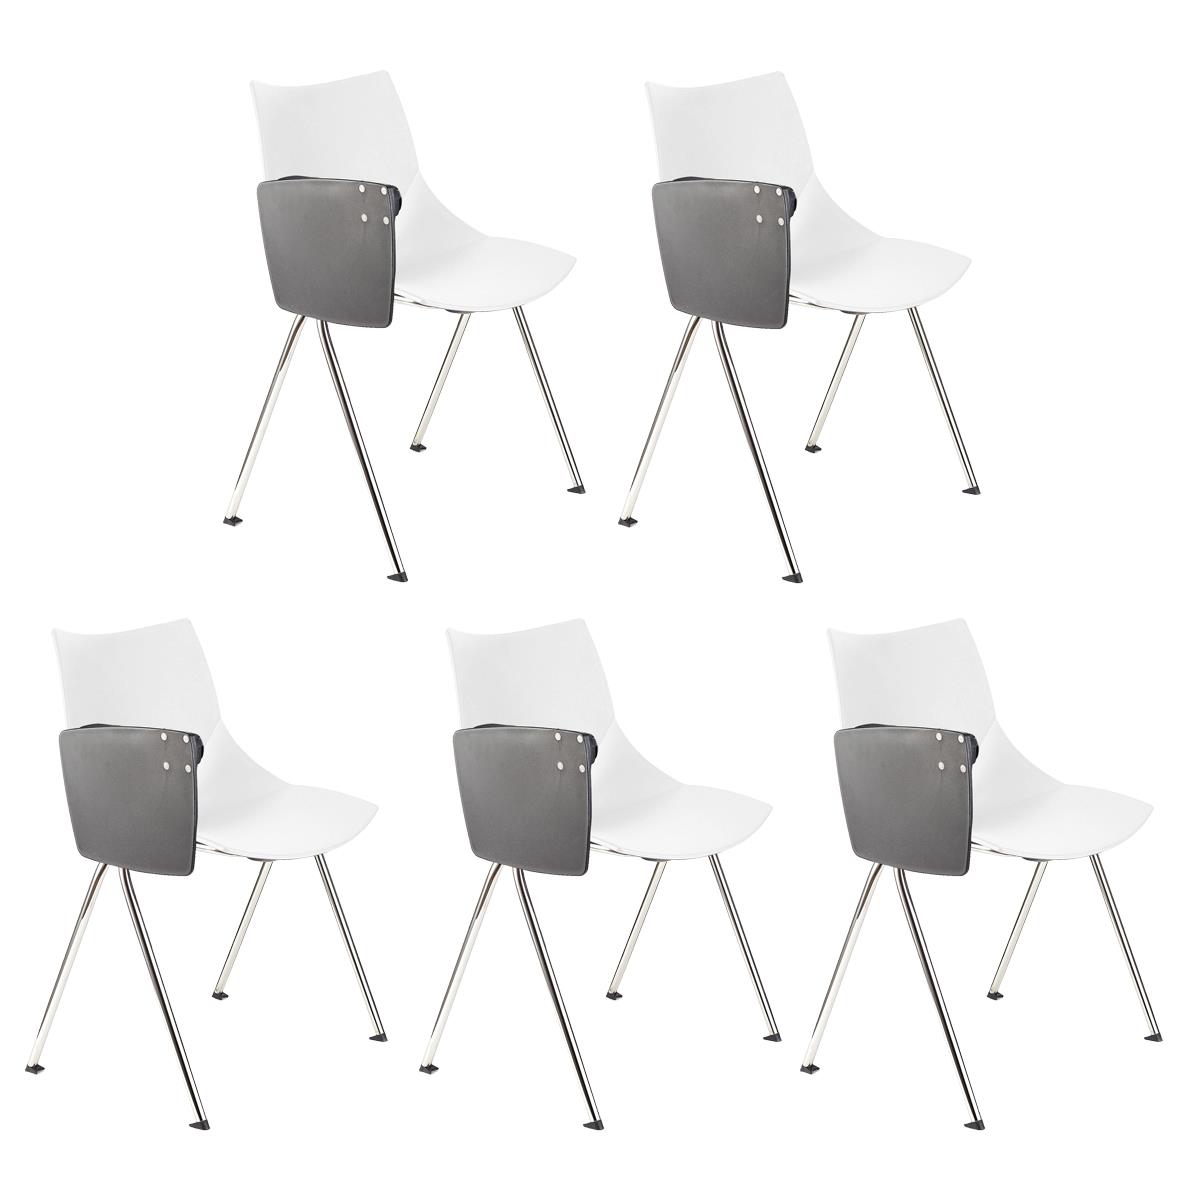 Lote de 5 sillas de Confidente AMIR CON PALA, Cómodas y Prácticas, Color Blanco